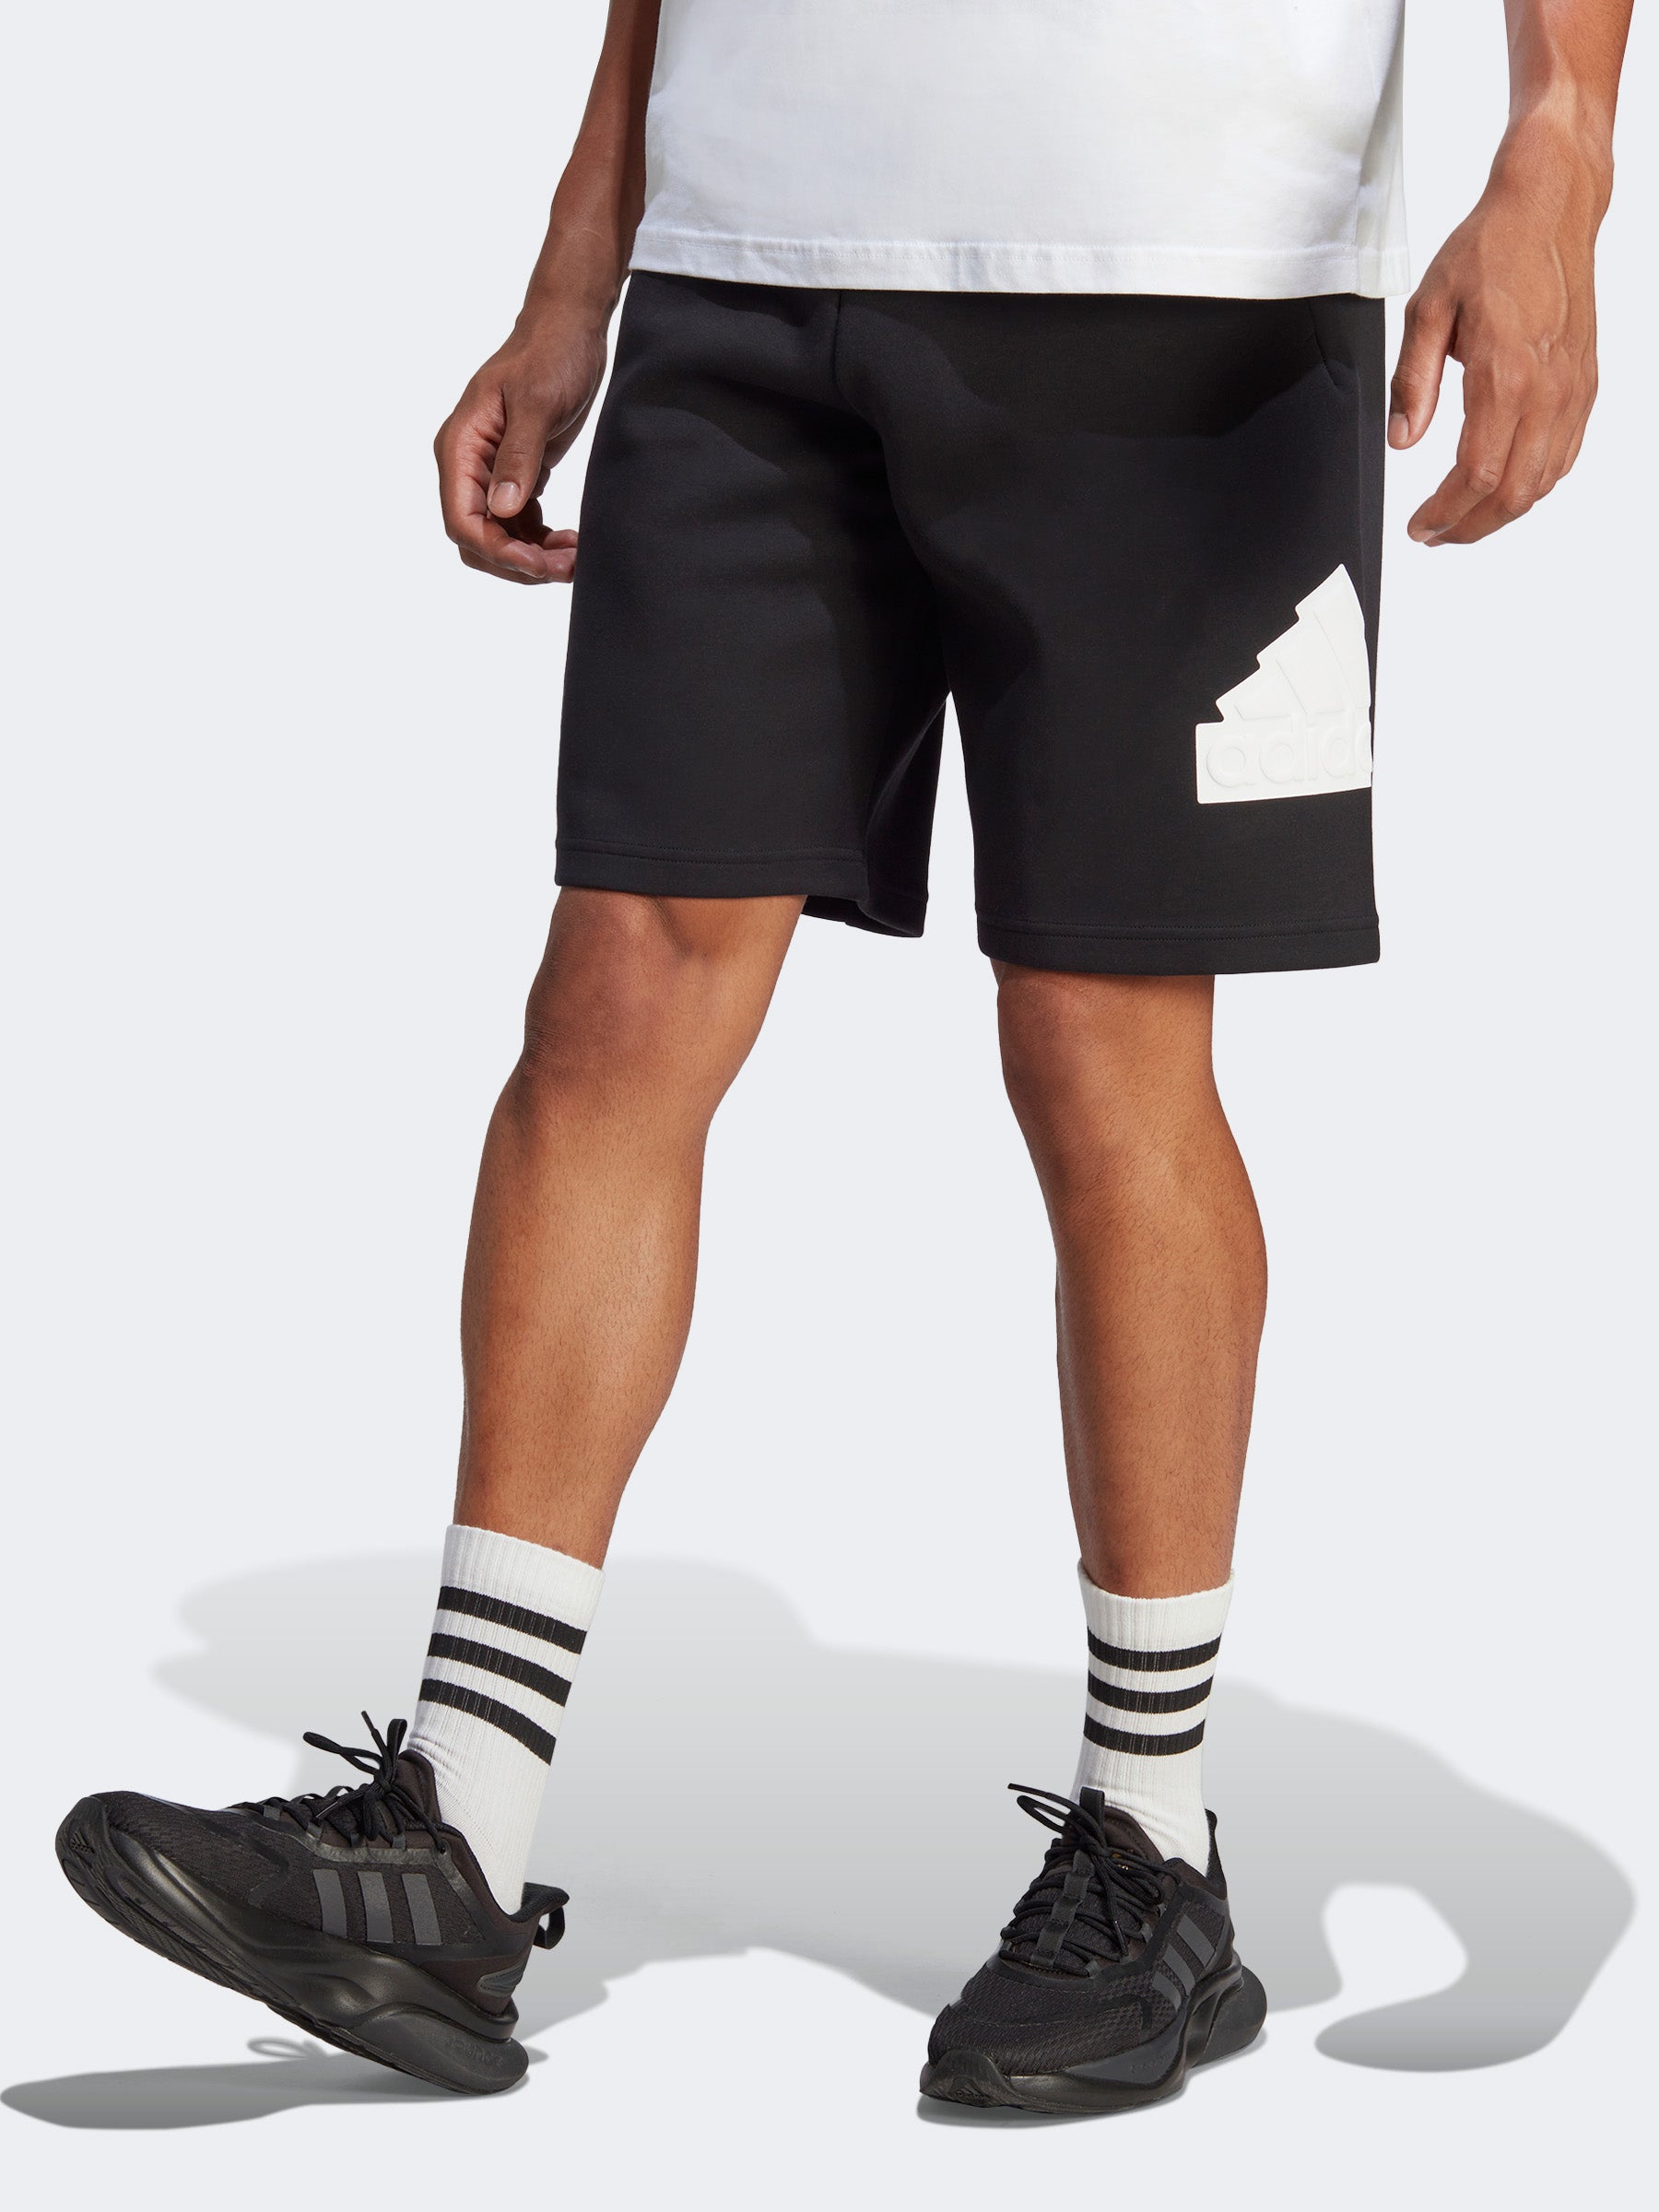 מכנסיים קצרים עם הדפס לוגו המותג- adidas performance|אדידס פרפורמנס